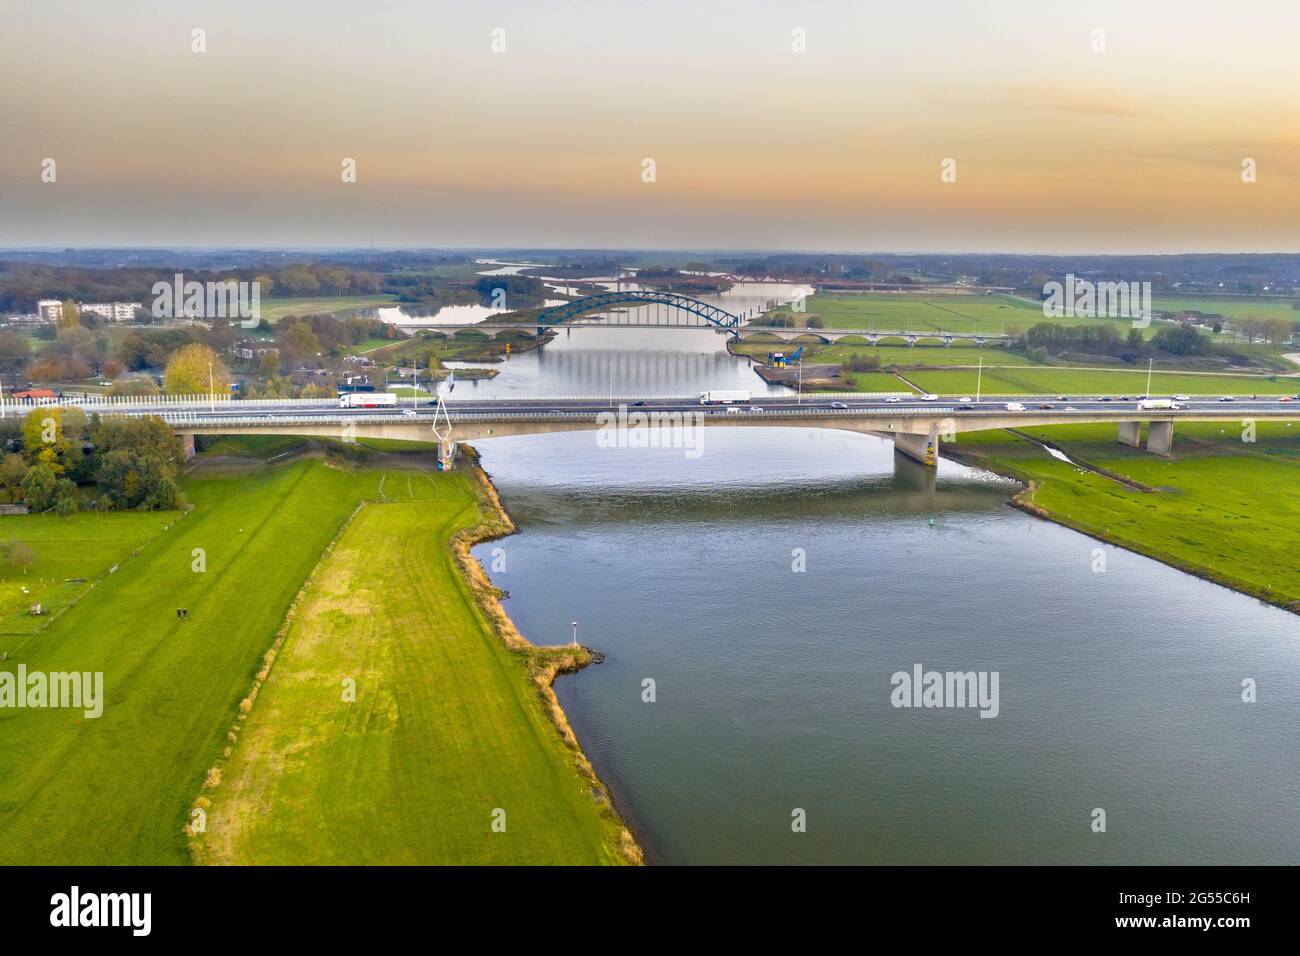 Luftaufnahme des riesigen Tieflandflusses IJssel mit Autobahn und Eisenbahnbrücken durch Sonnenuntergangslandschaft. Zwolle, Overijssel Provinz, Niederlande. Dro Stockfoto